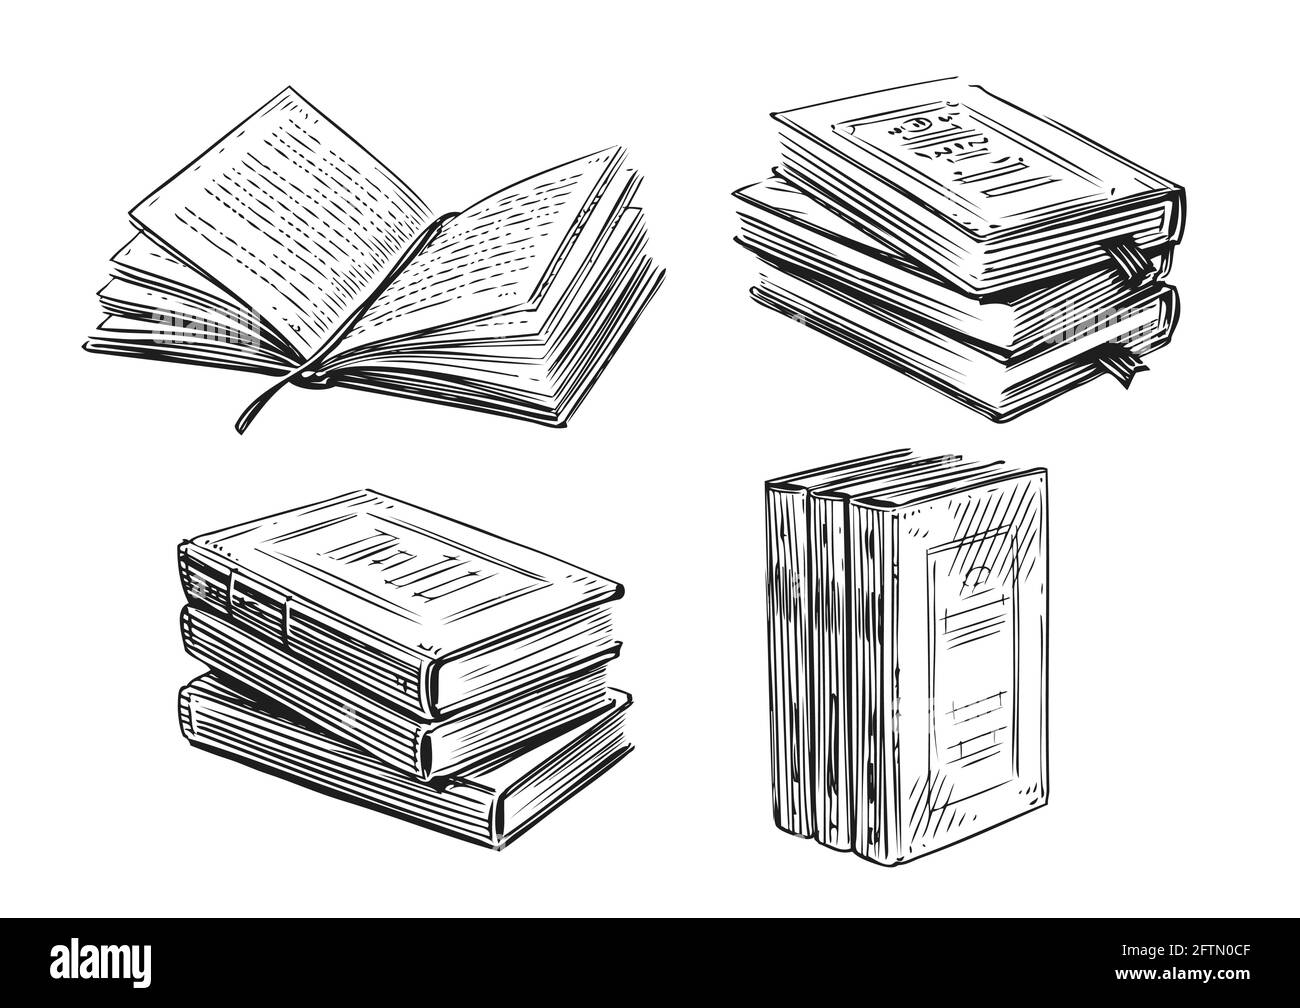 Croquis de libros. Literatura, concepto de biblioteca en estilo vintage. Elementos de diseño vectorial dibujados a mano Ilustración del Vector